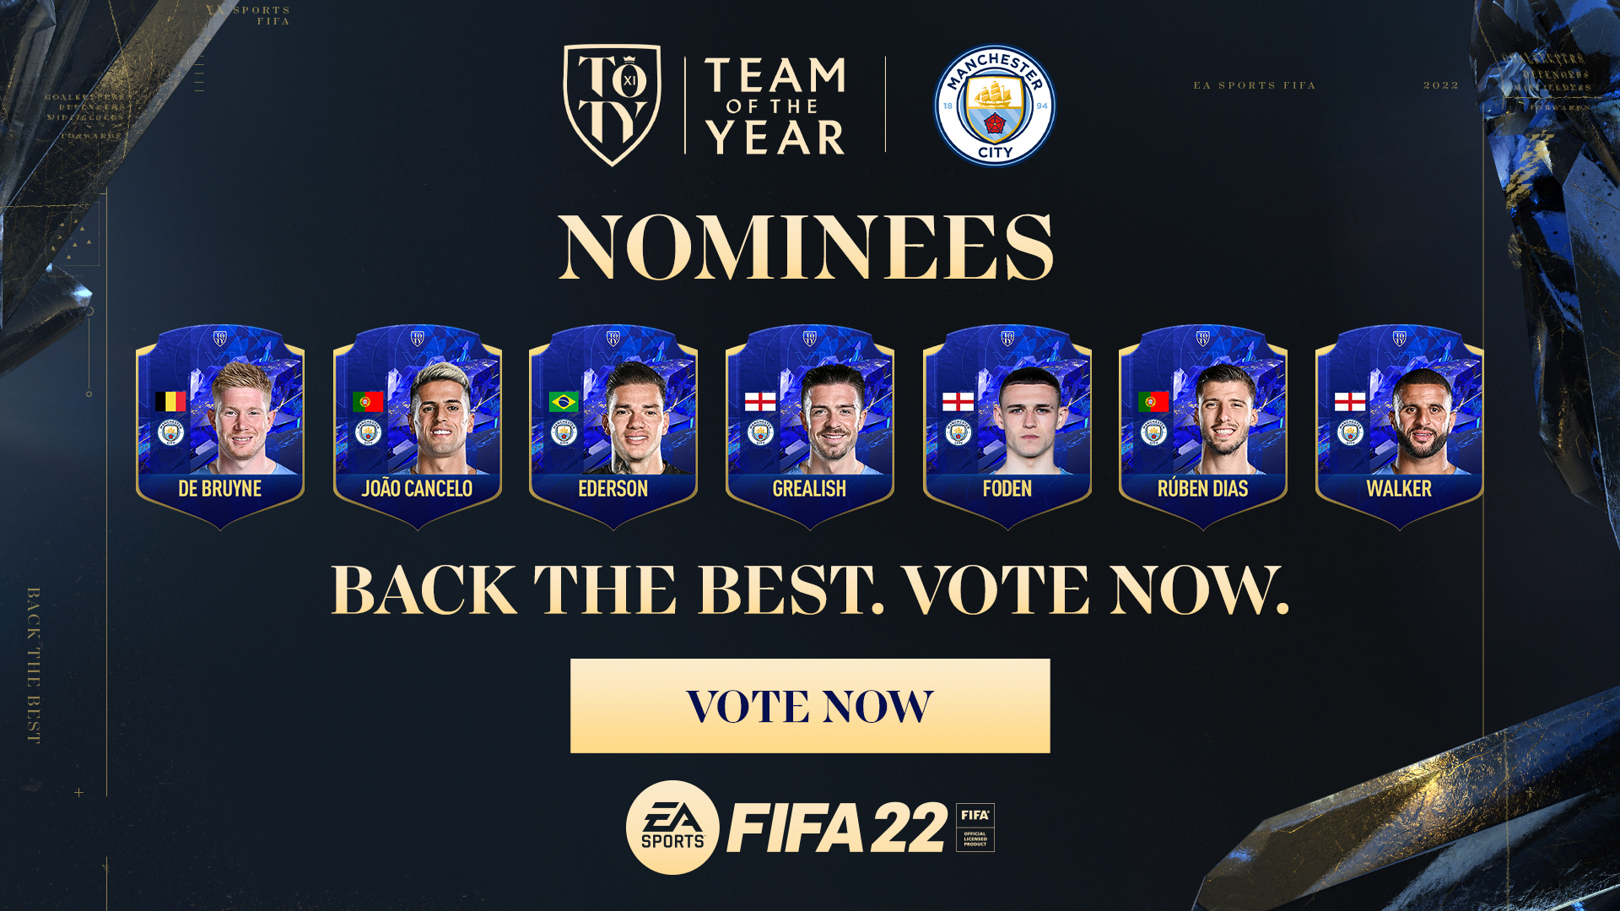 FIFA22 올해의 팀 후보에 이름을 올린 7명의 CITY 선수들